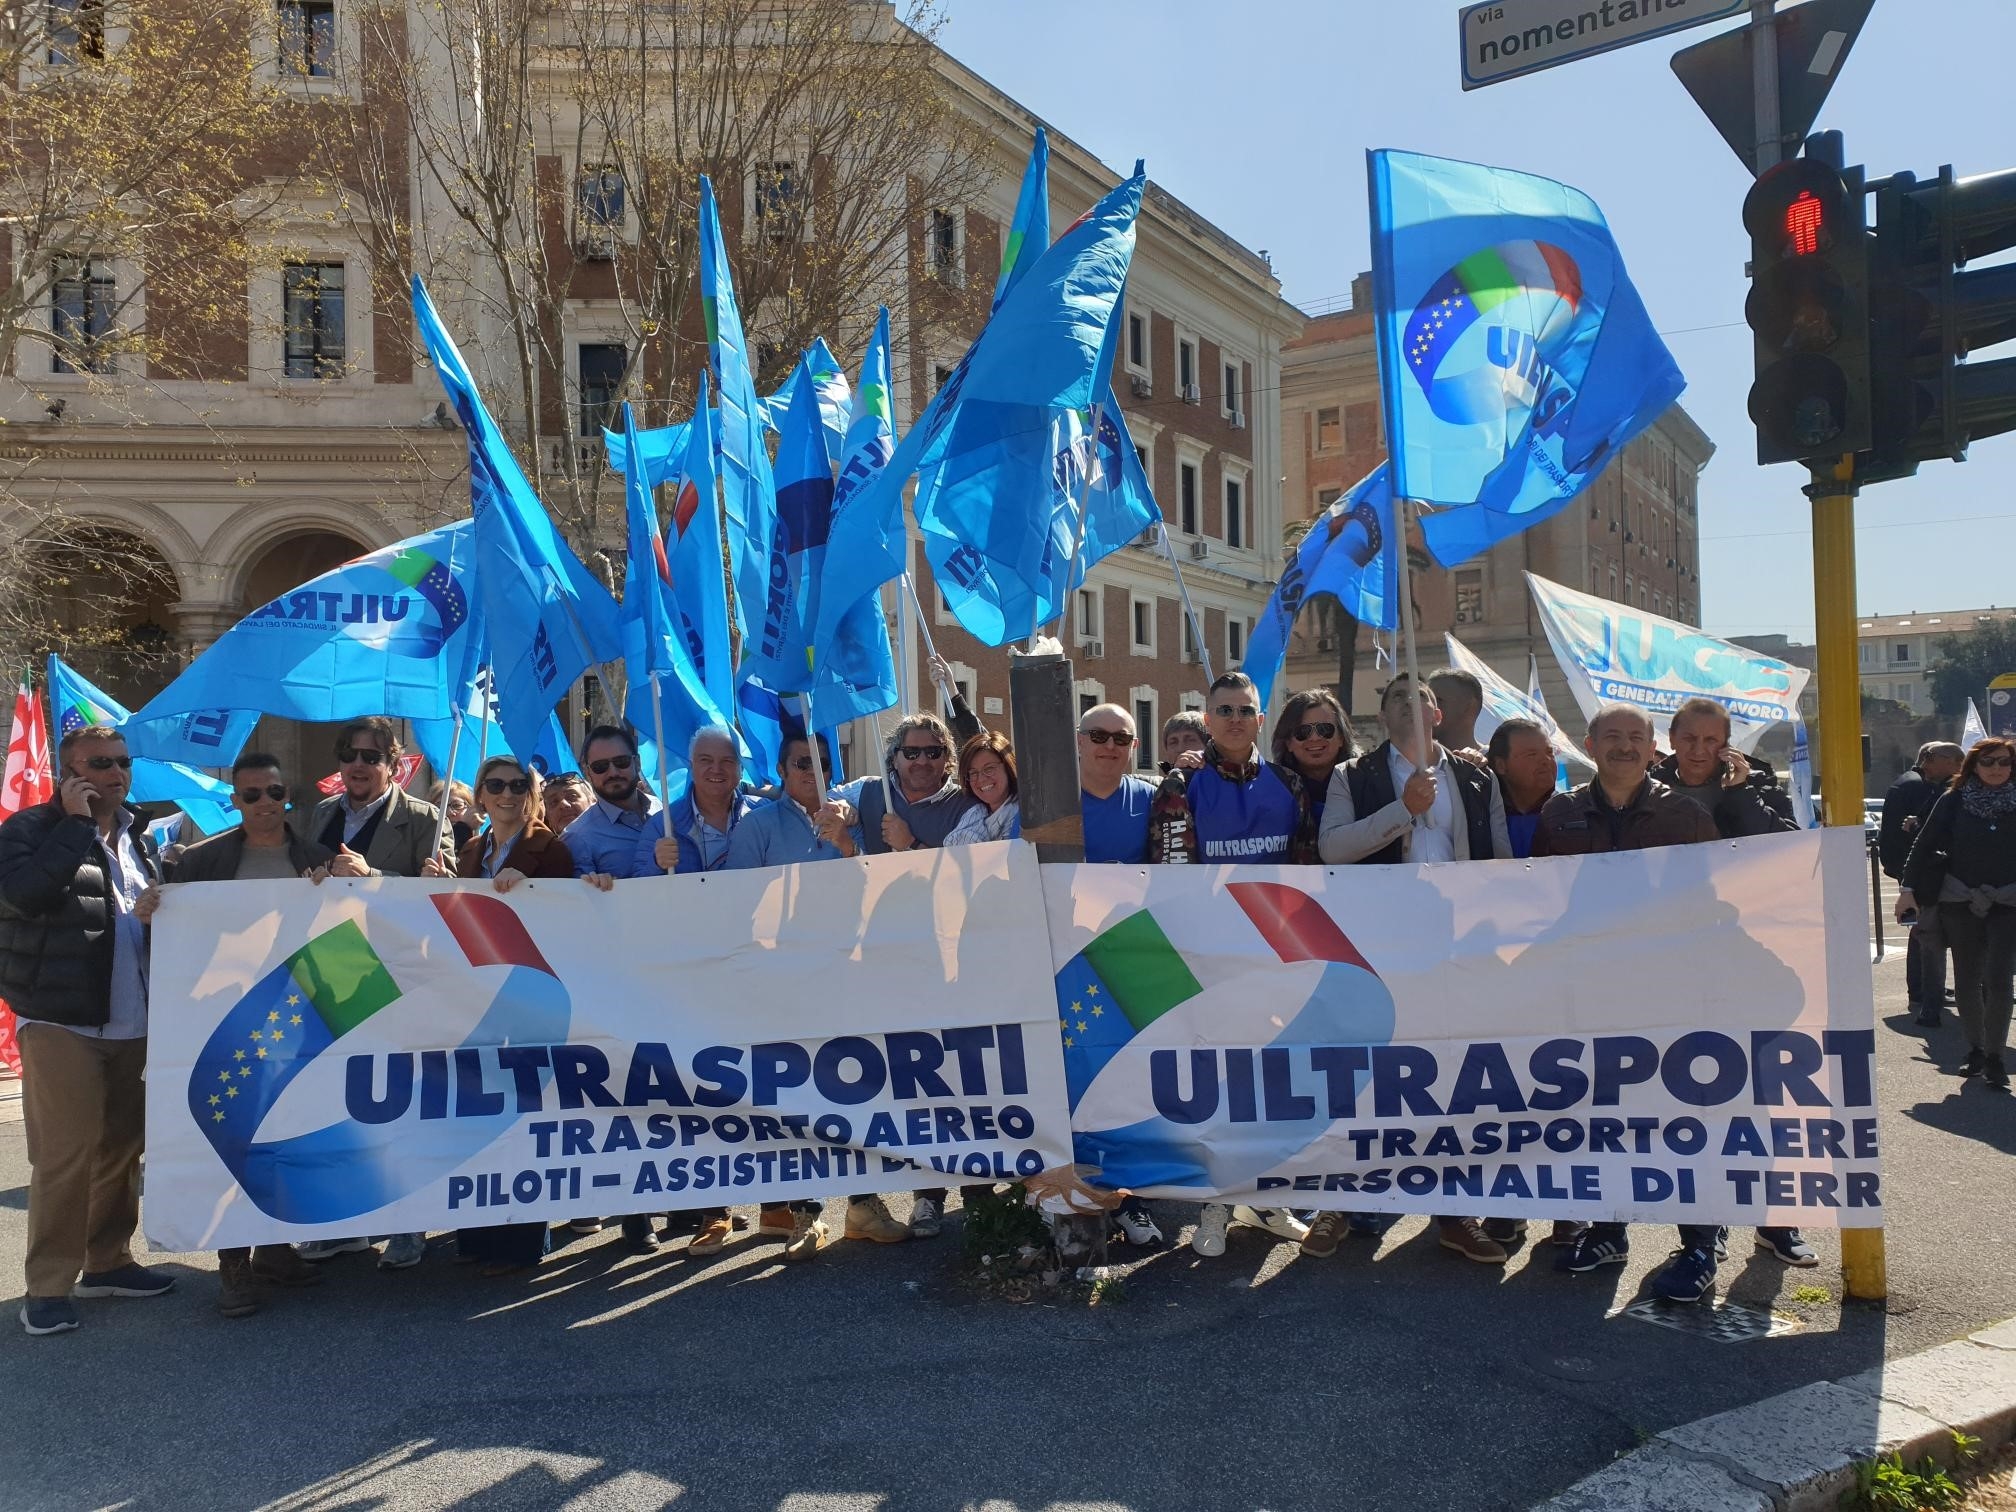 Trasporto Aereo, Tarlazzi: chiediamo misure urgenti per sviluppo settore e tutela lavoratori